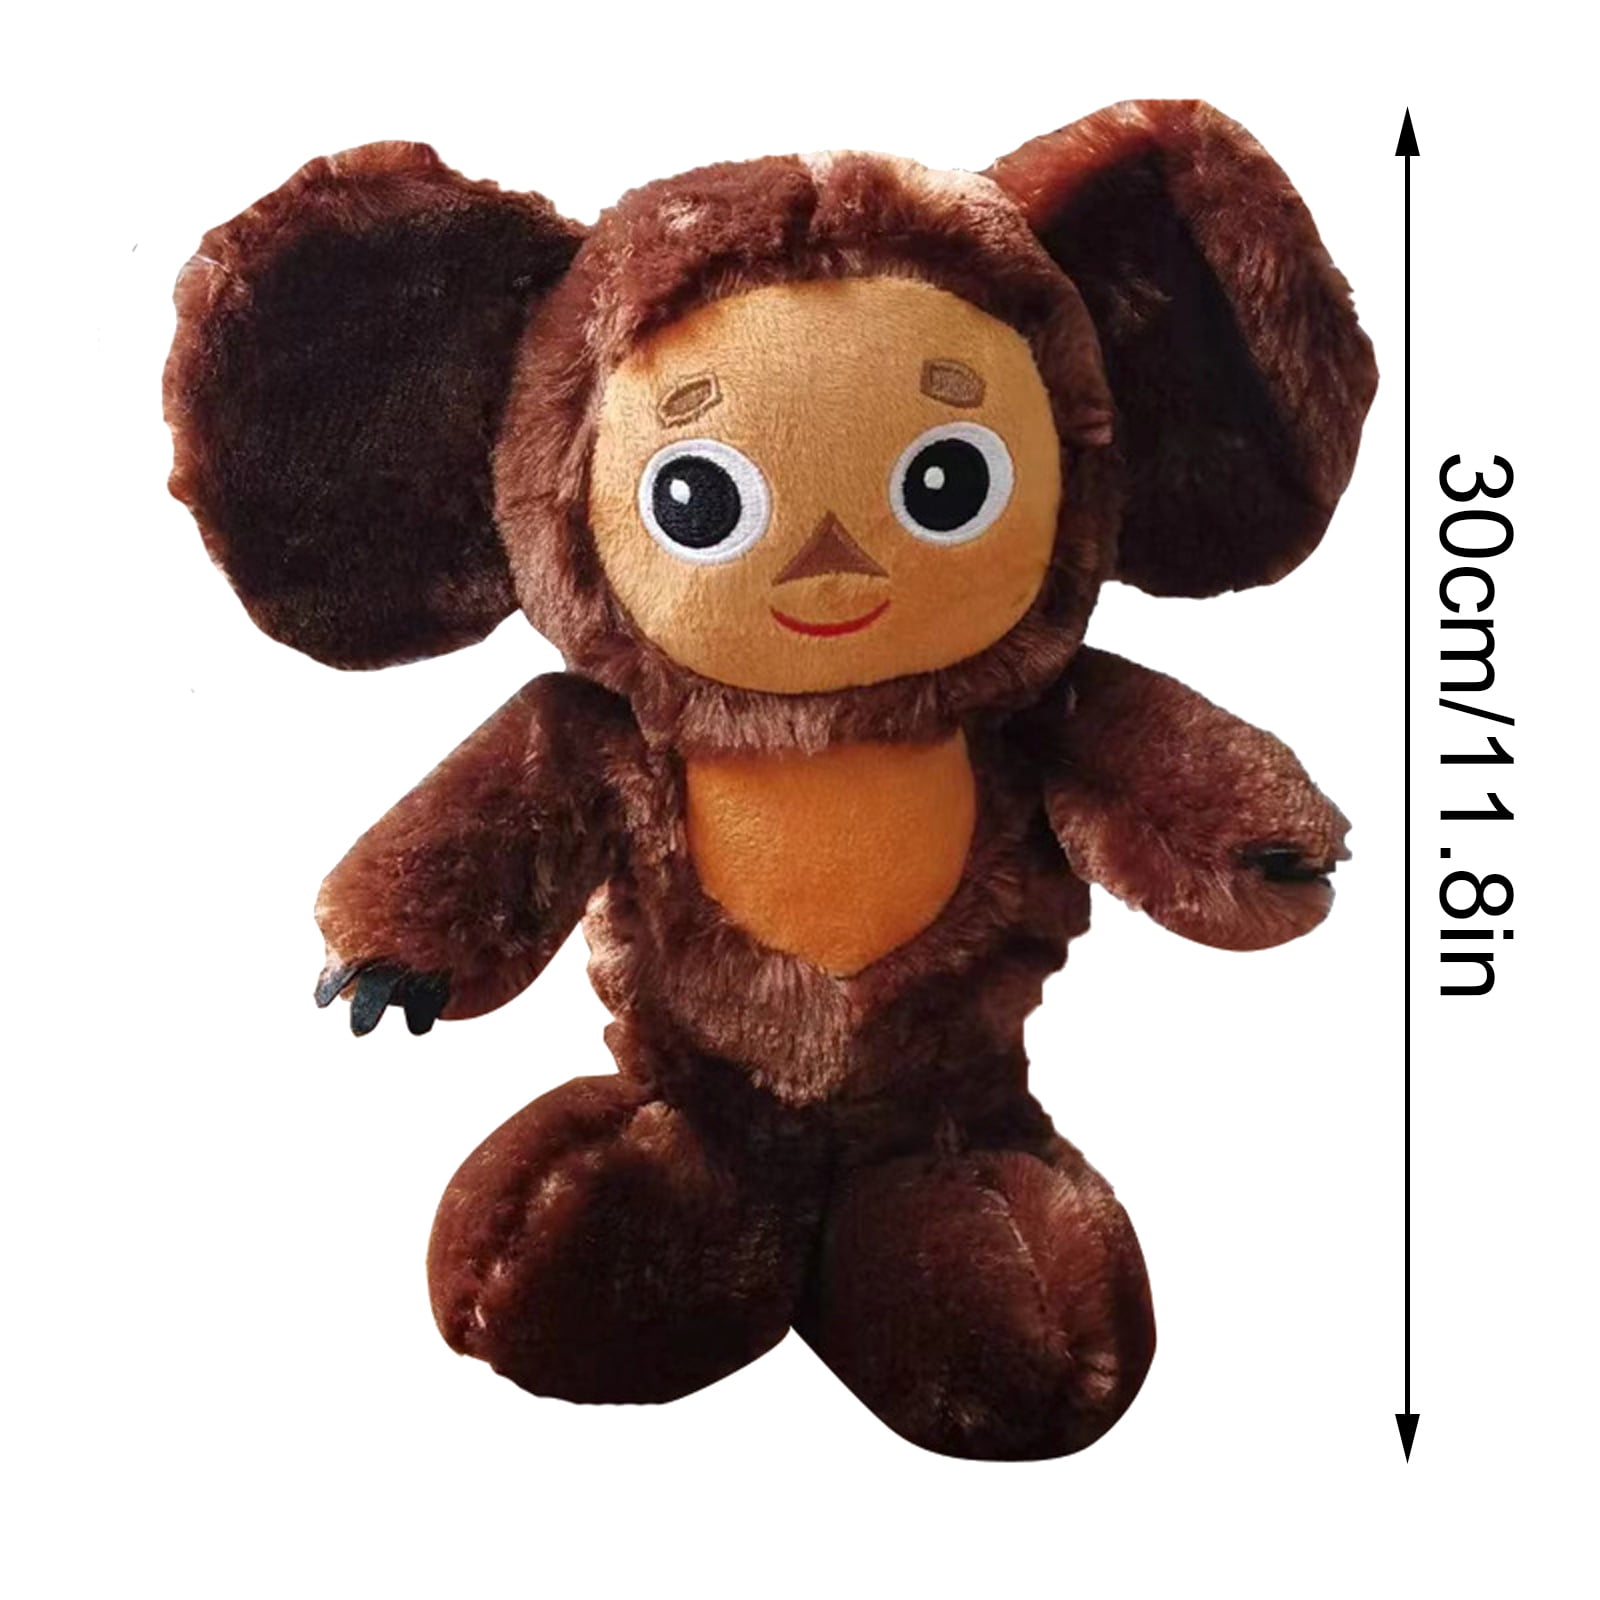 Cheburashka Plush Toy Cartoon Monkey Plush Doll Gift for Boys Girls  Cheburashka Monkey Stuffed Toys 20CM